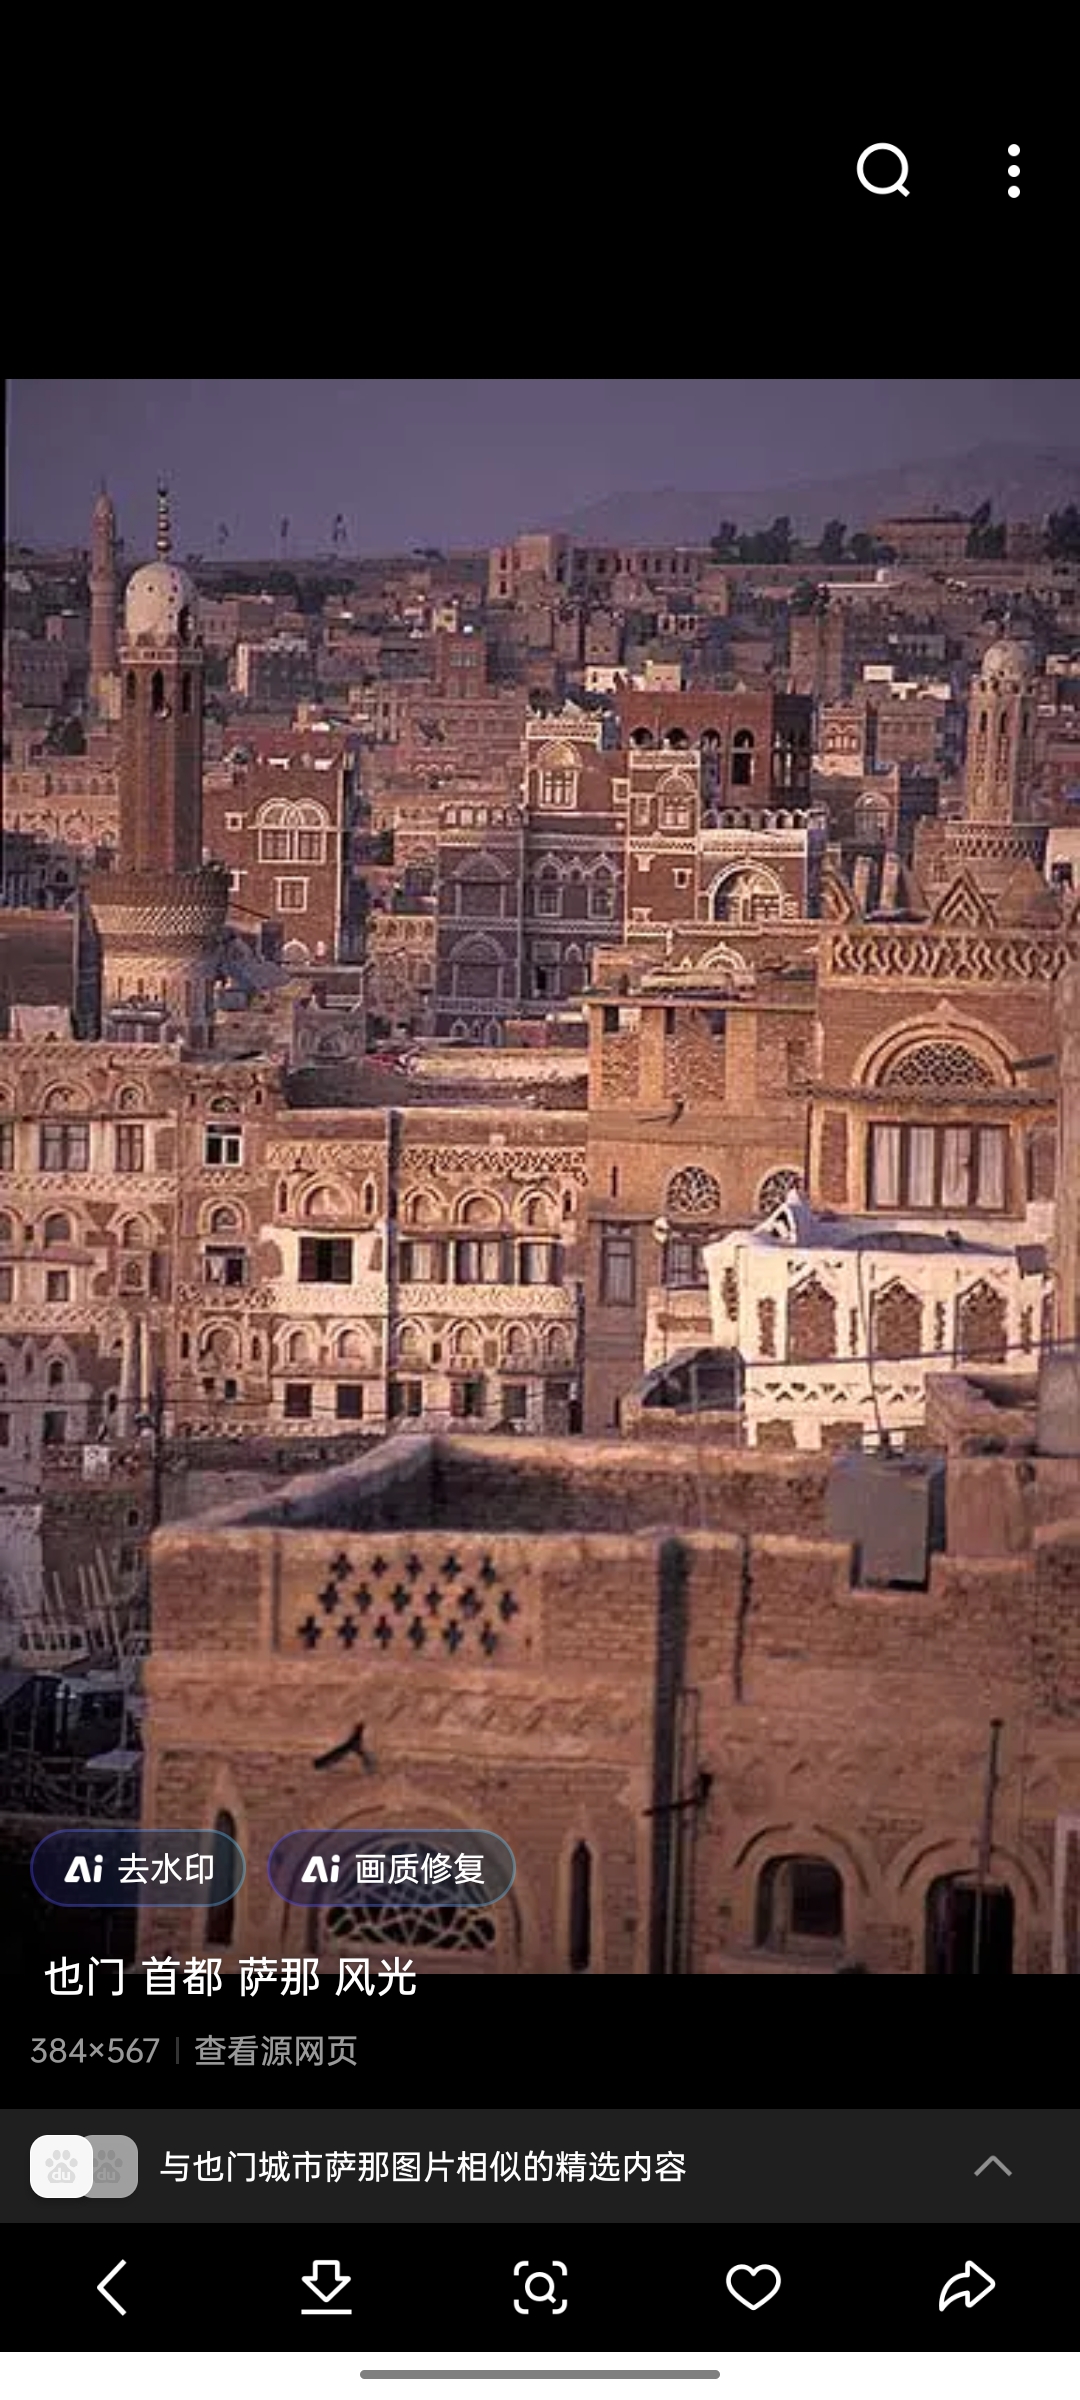 萨那：萨那是也门的法定首都，同时也是该国第一大城市，被认为是政治、经济和文化中心。